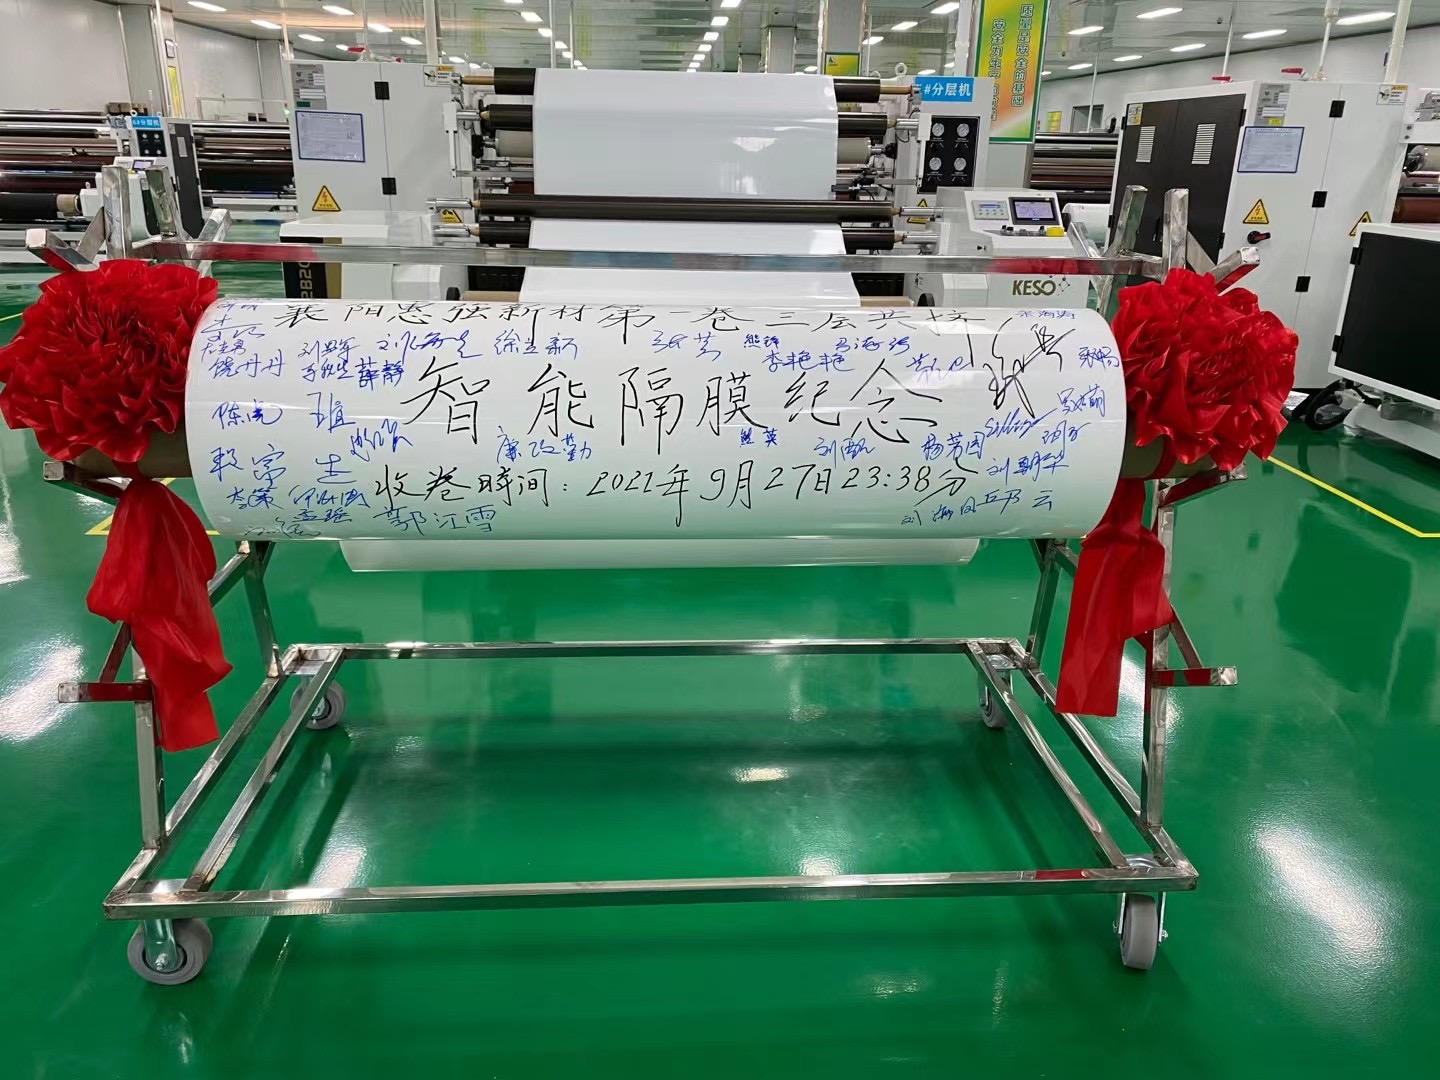 惠强新材年产3亿㎡襄阳锂电池智能隔膜生产基地试生产